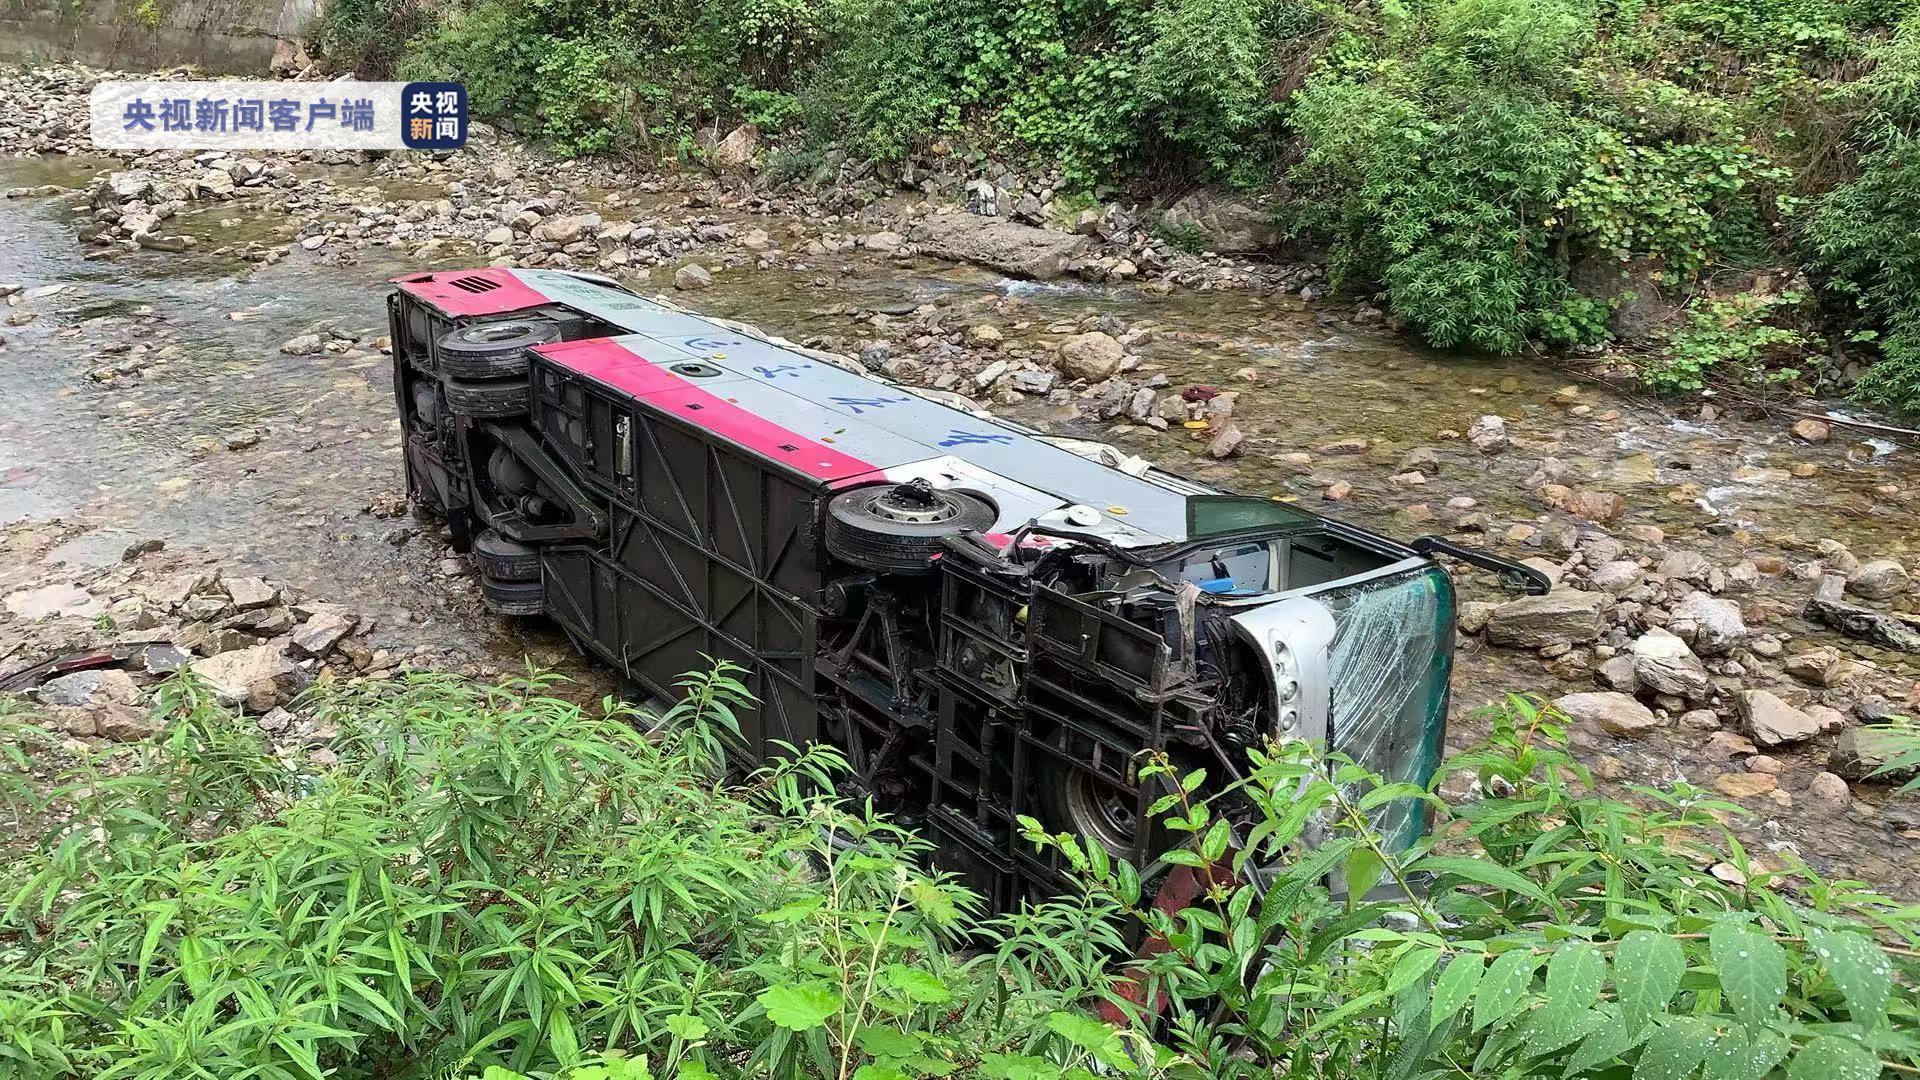 載有20餘人的巴士翻入河溝事故意外